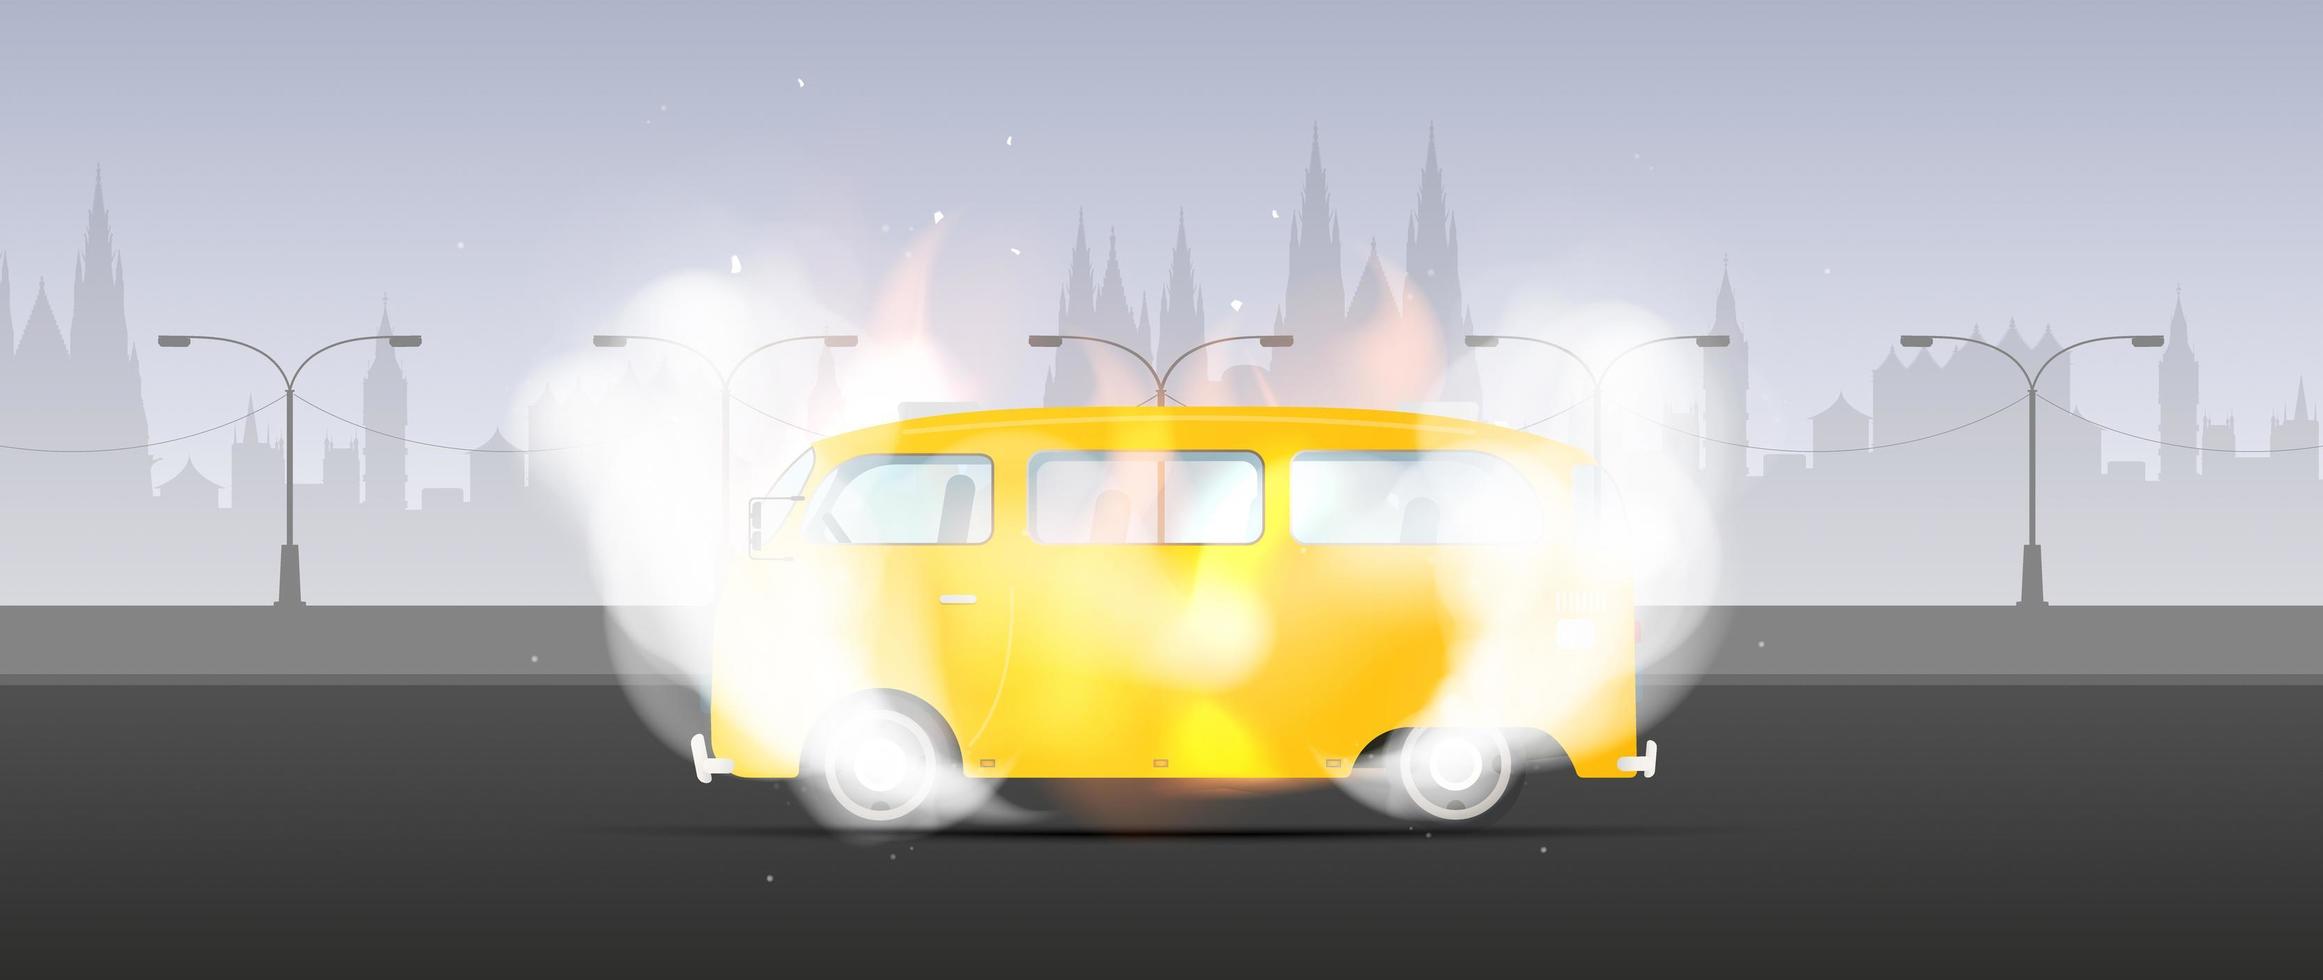 gele bus in vlammen en rook. de bus staat in brand. vectorillustratie. vector